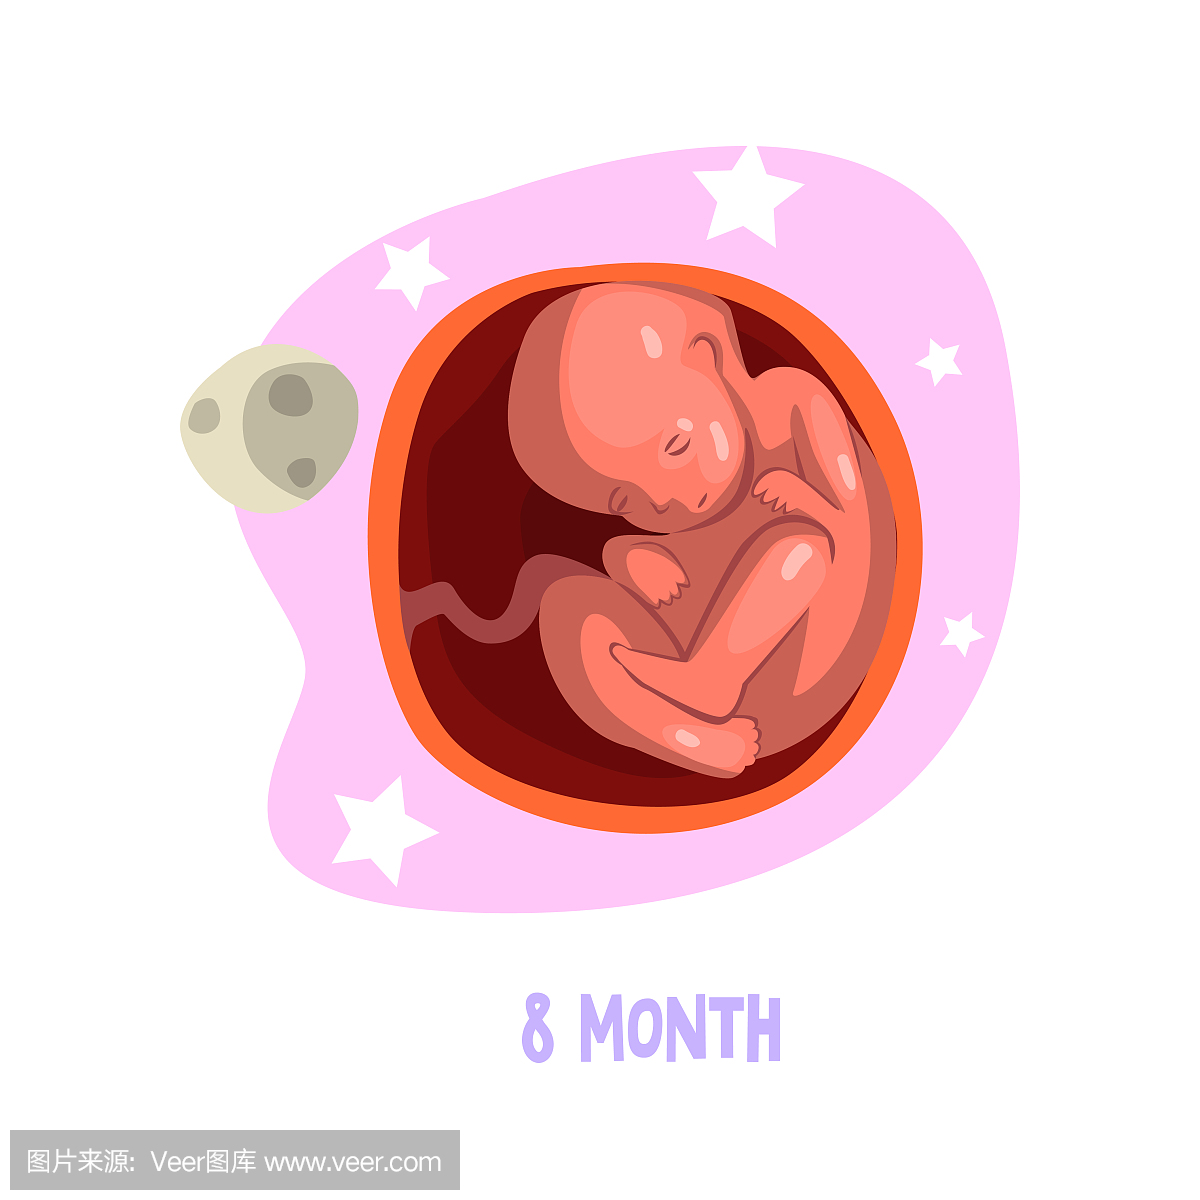 胎儿在子宫内发育的过程。怀孕8个月。教育书